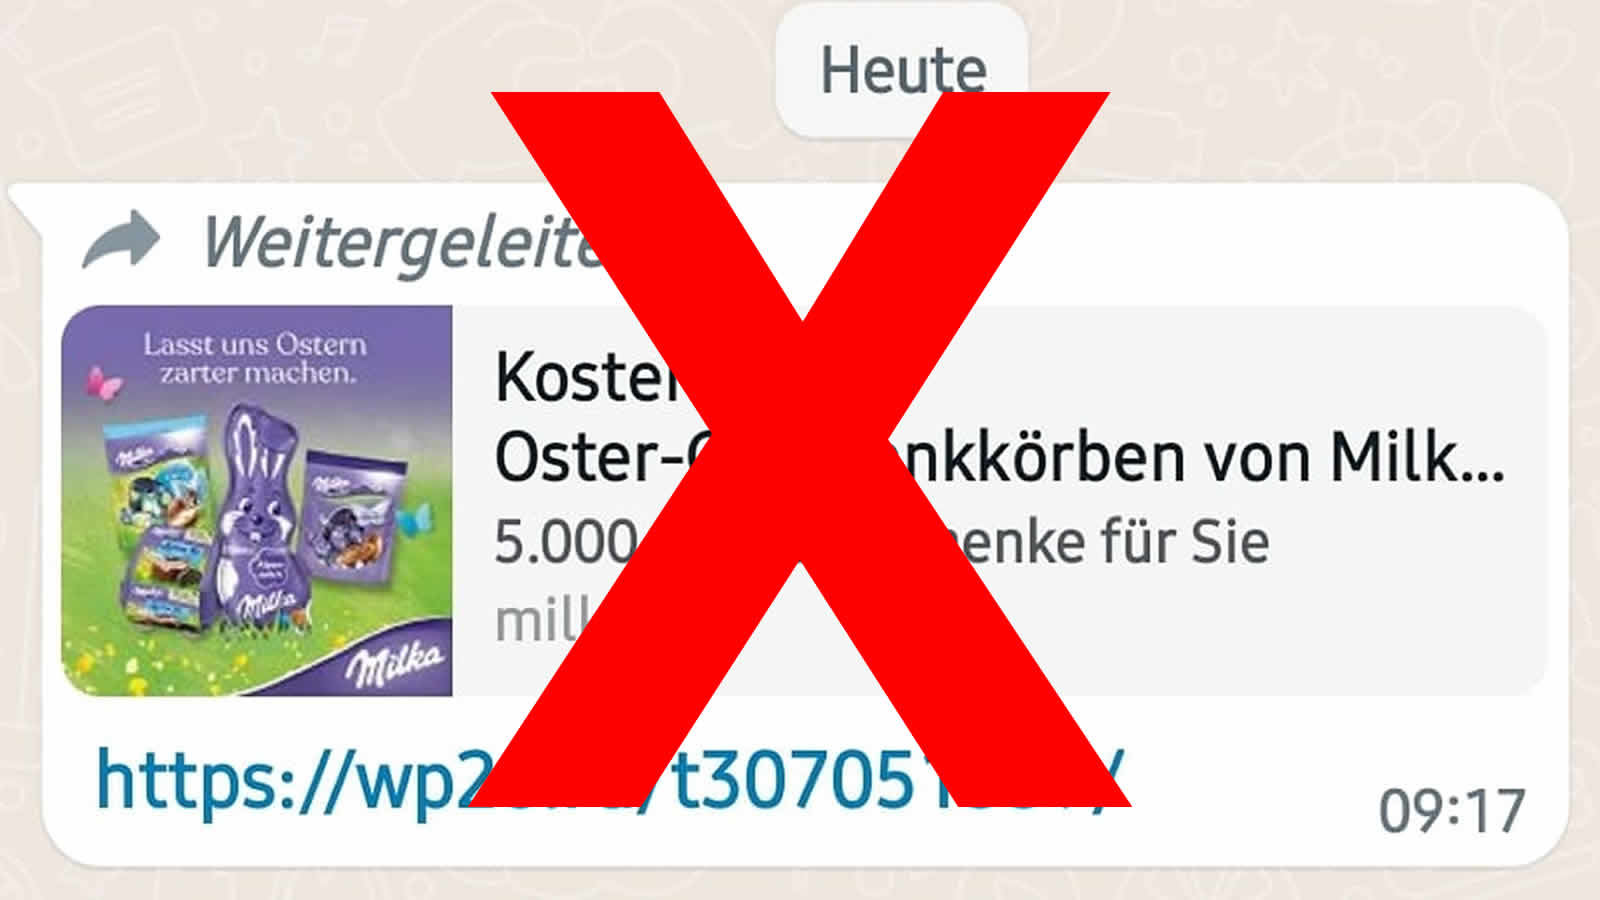 WhatsApp-Warnung vor: "Kostenlose Oster-Geschenkkörbe von Milka"